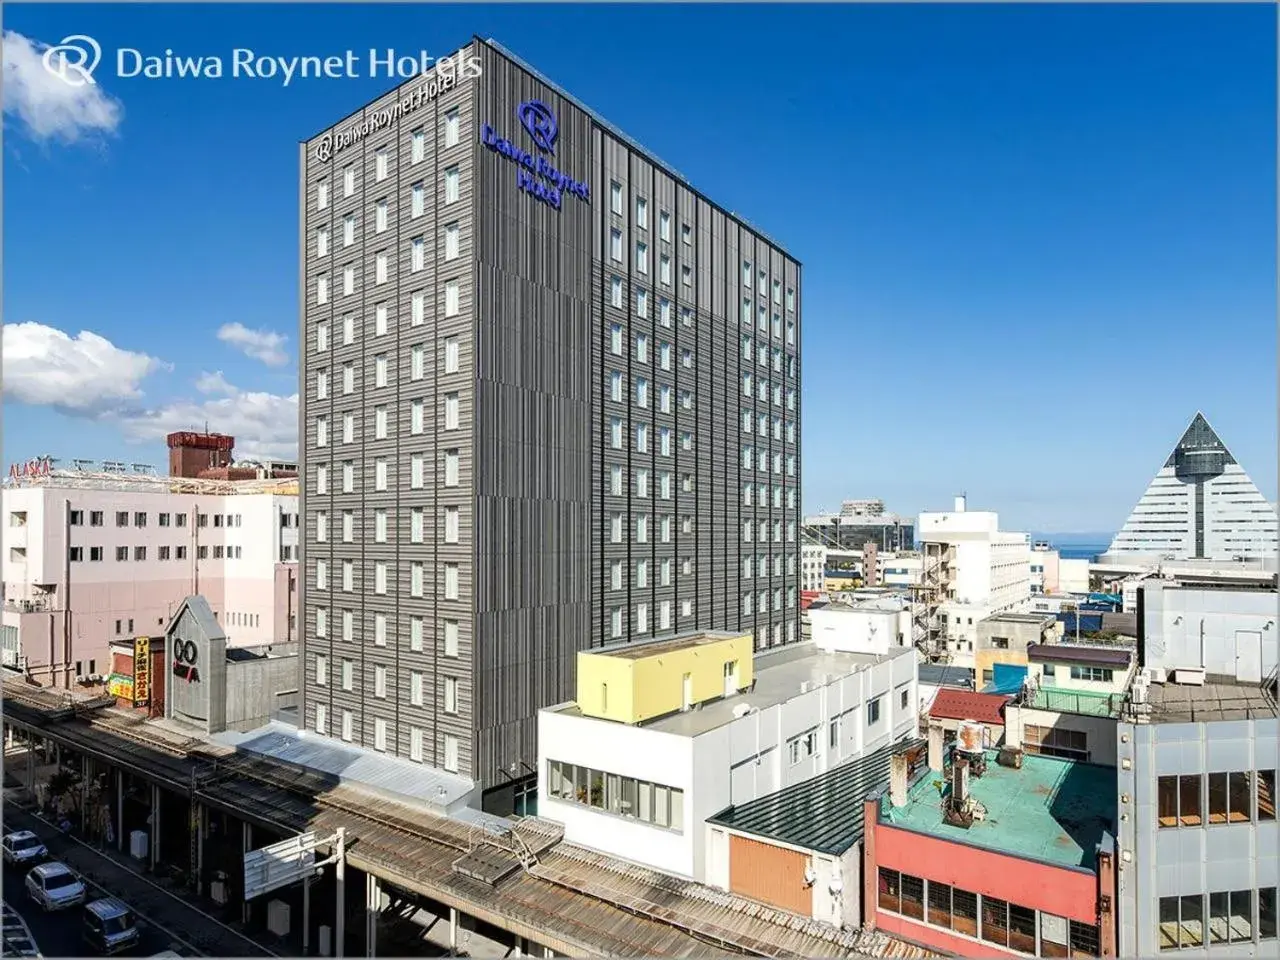 Property building in Daiwa Roynet Hotel Aomori